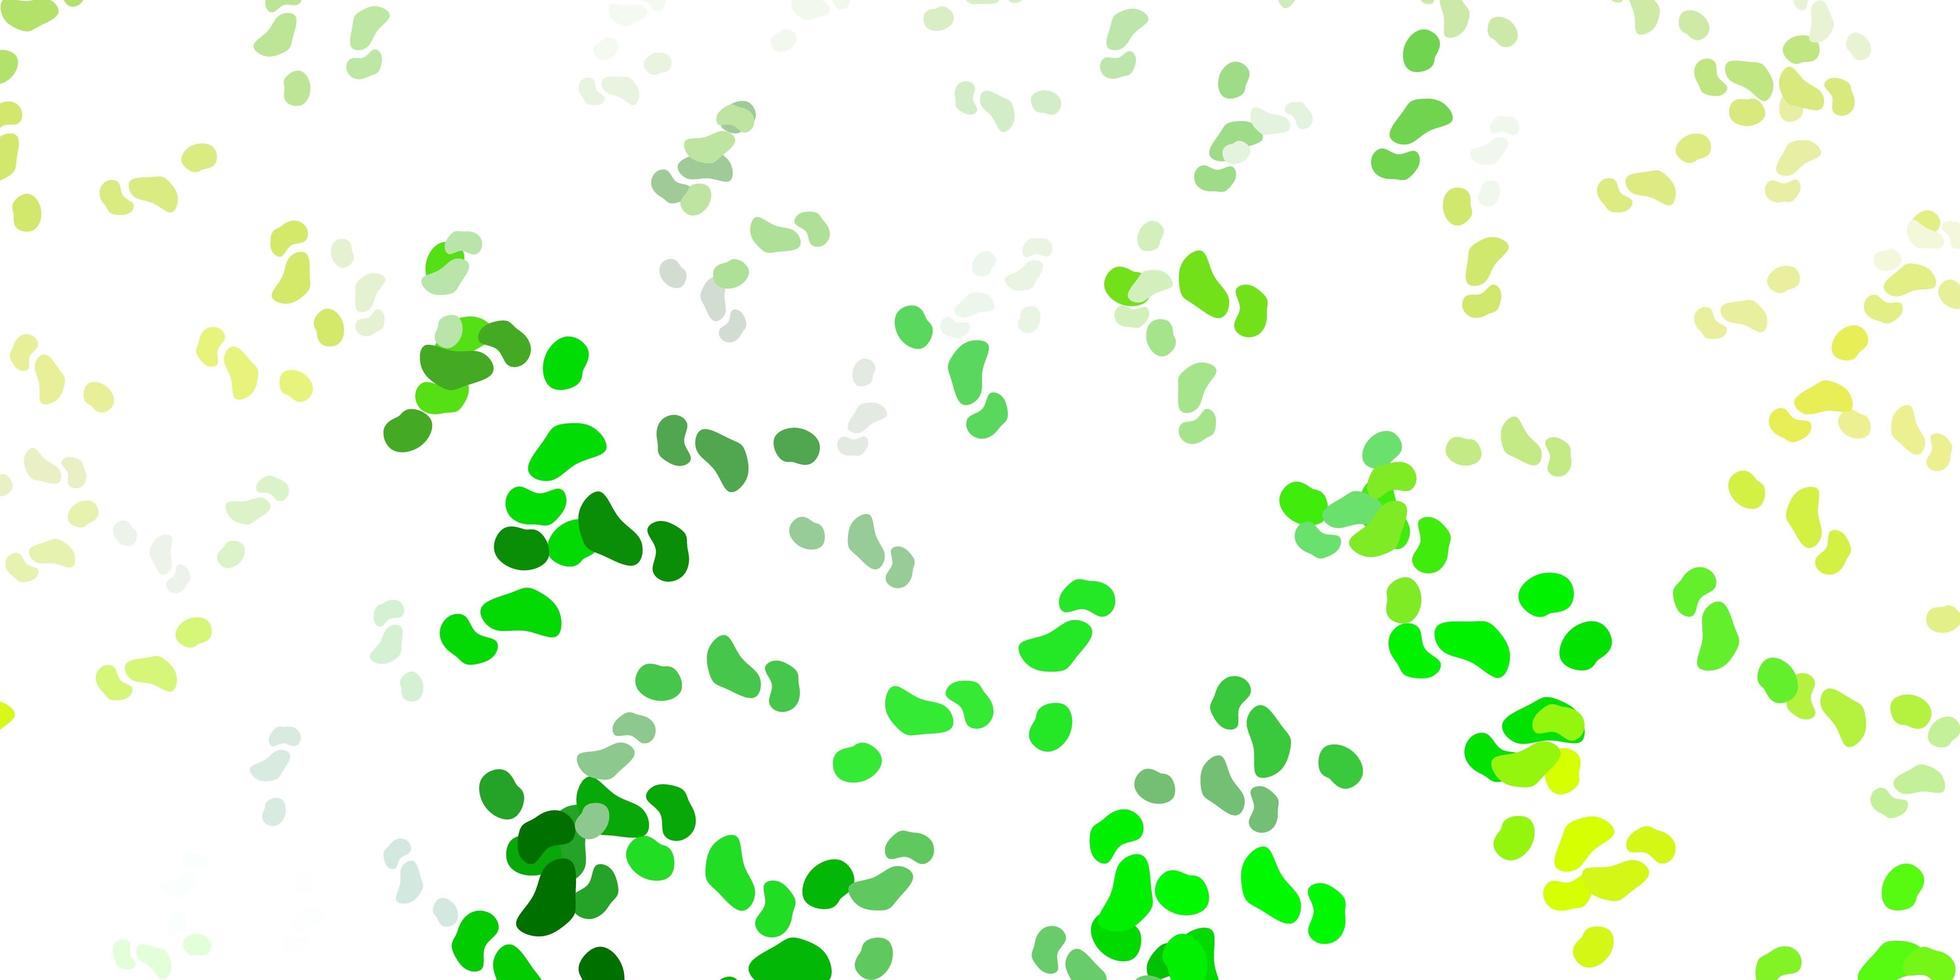 padrão de vetor verde e amarelo claro com formas abstratas.